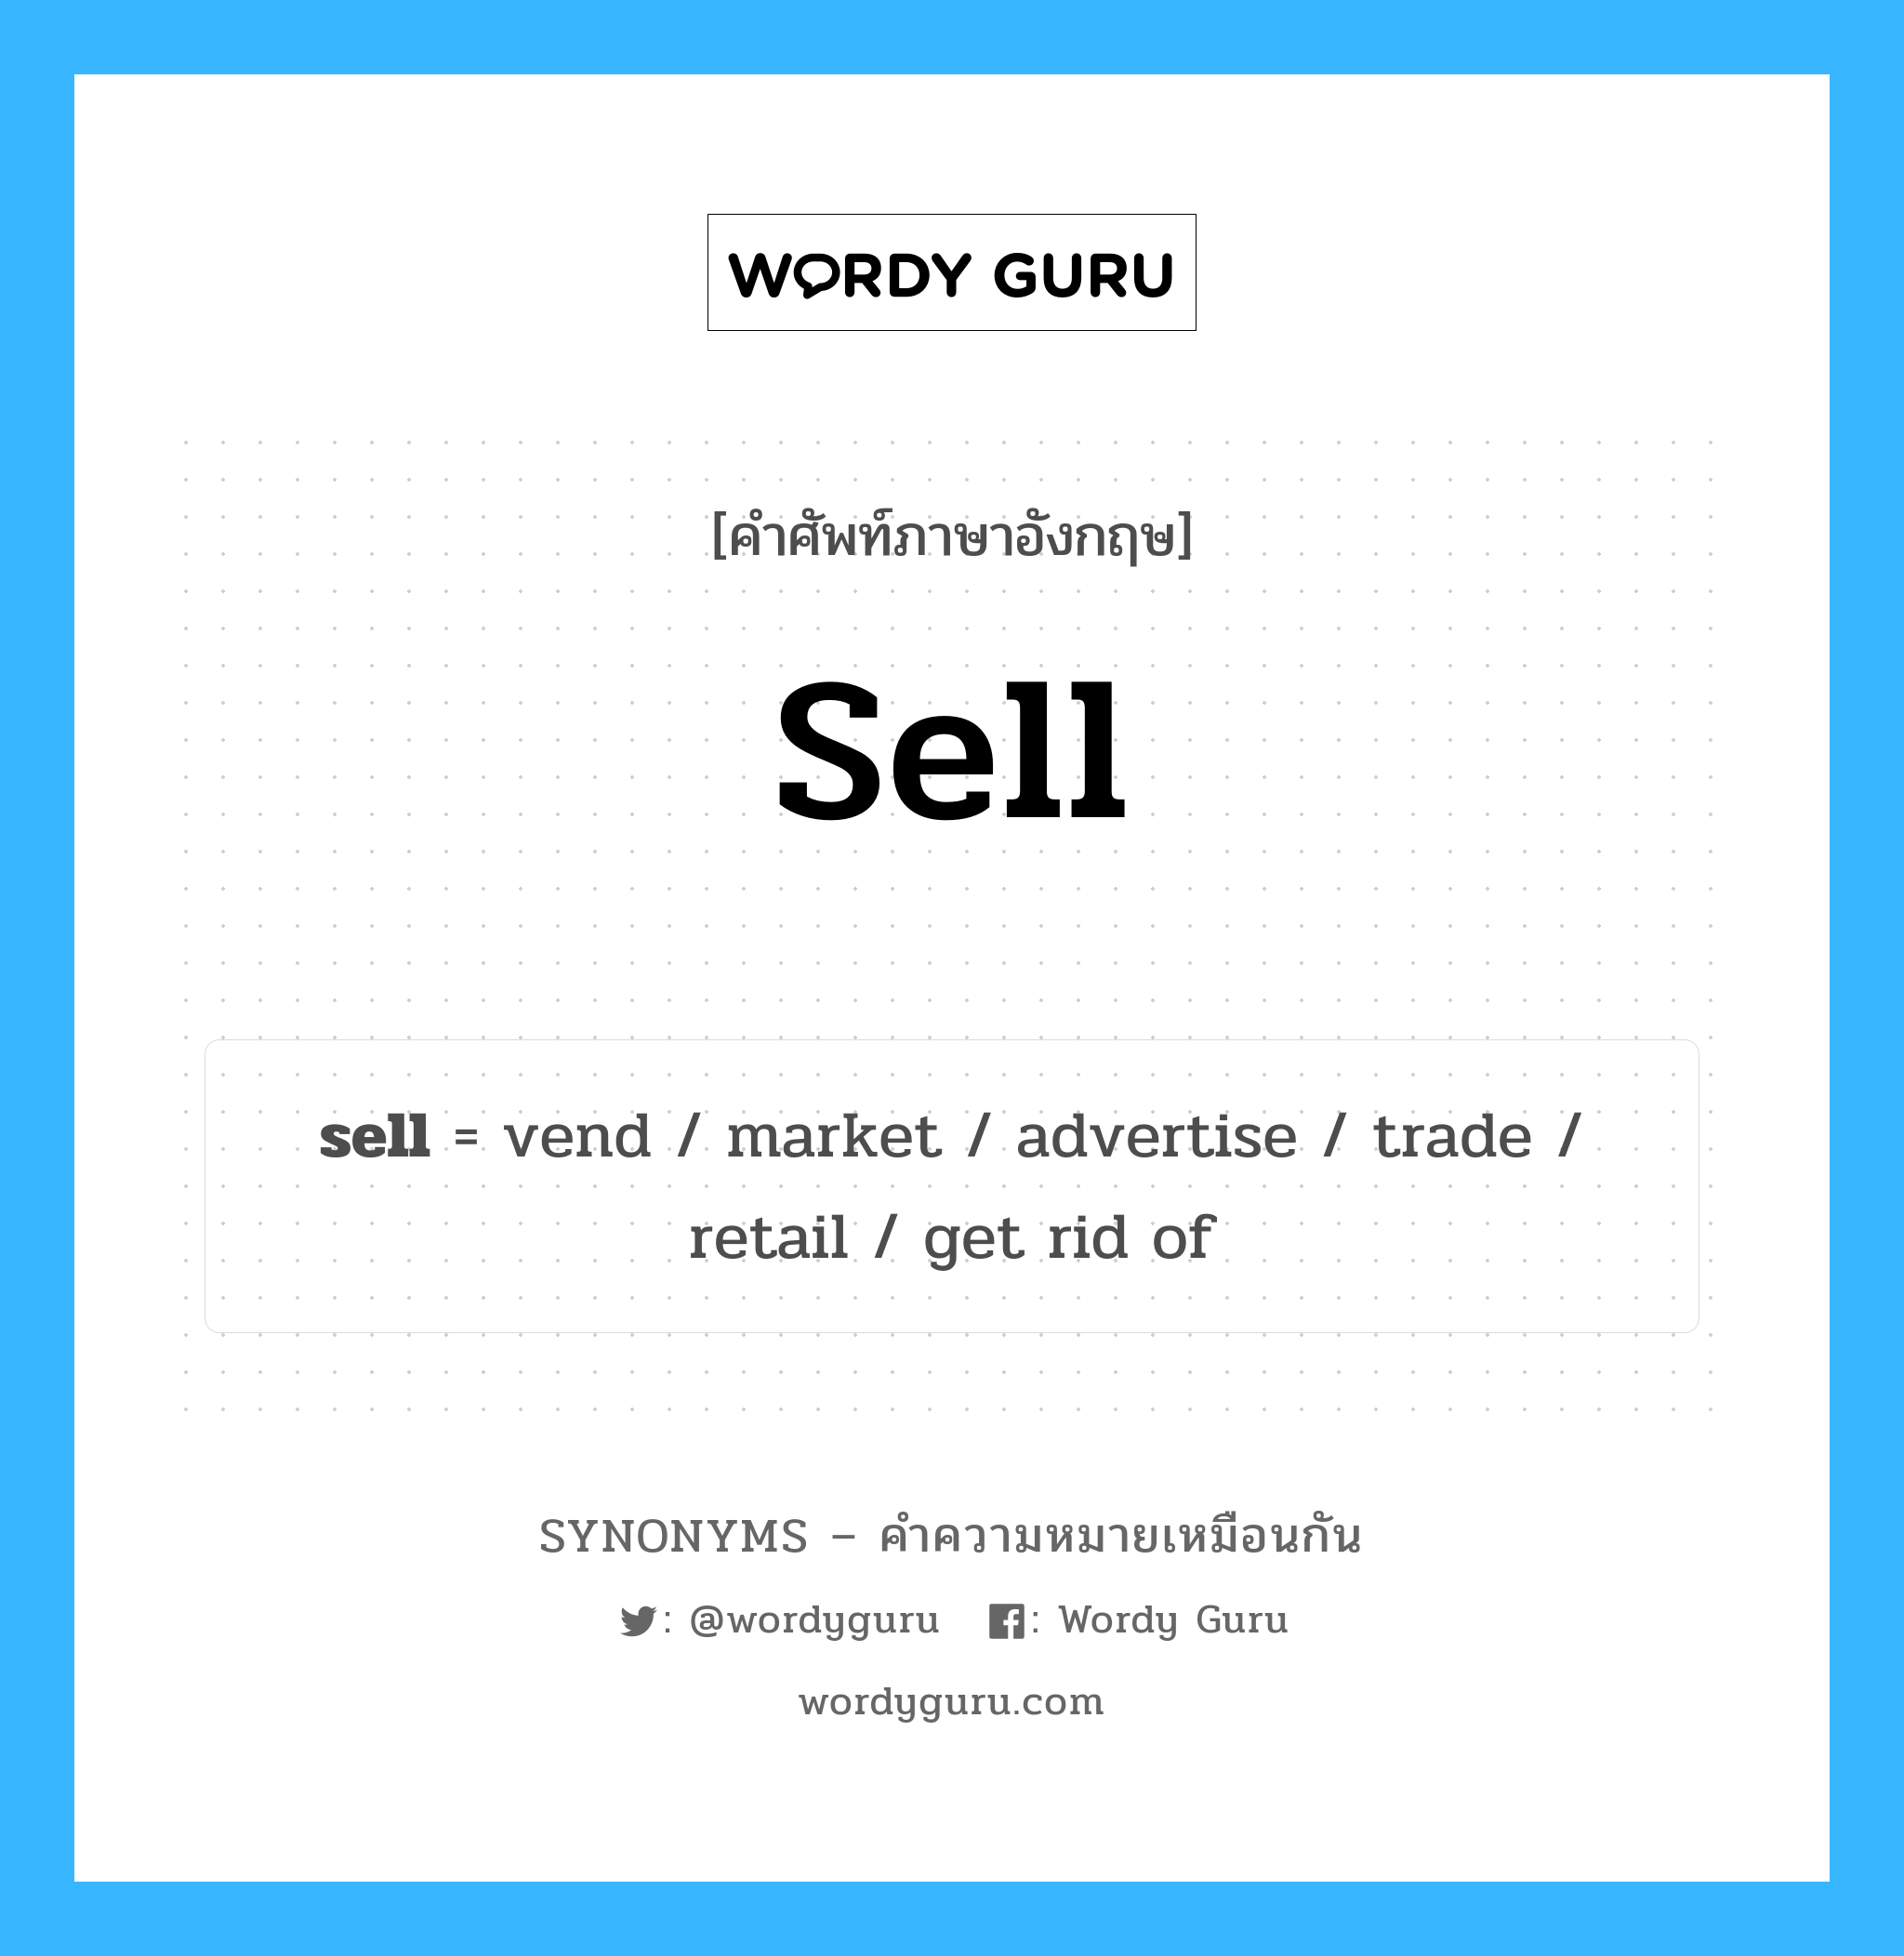 retail เป็นหนึ่งใน sell และมีคำอื่น ๆ อีกดังนี้, คำศัพท์ภาษาอังกฤษ retail ความหมายคล้ายกันกับ sell แปลว่า ขายปลีก หมวด sell